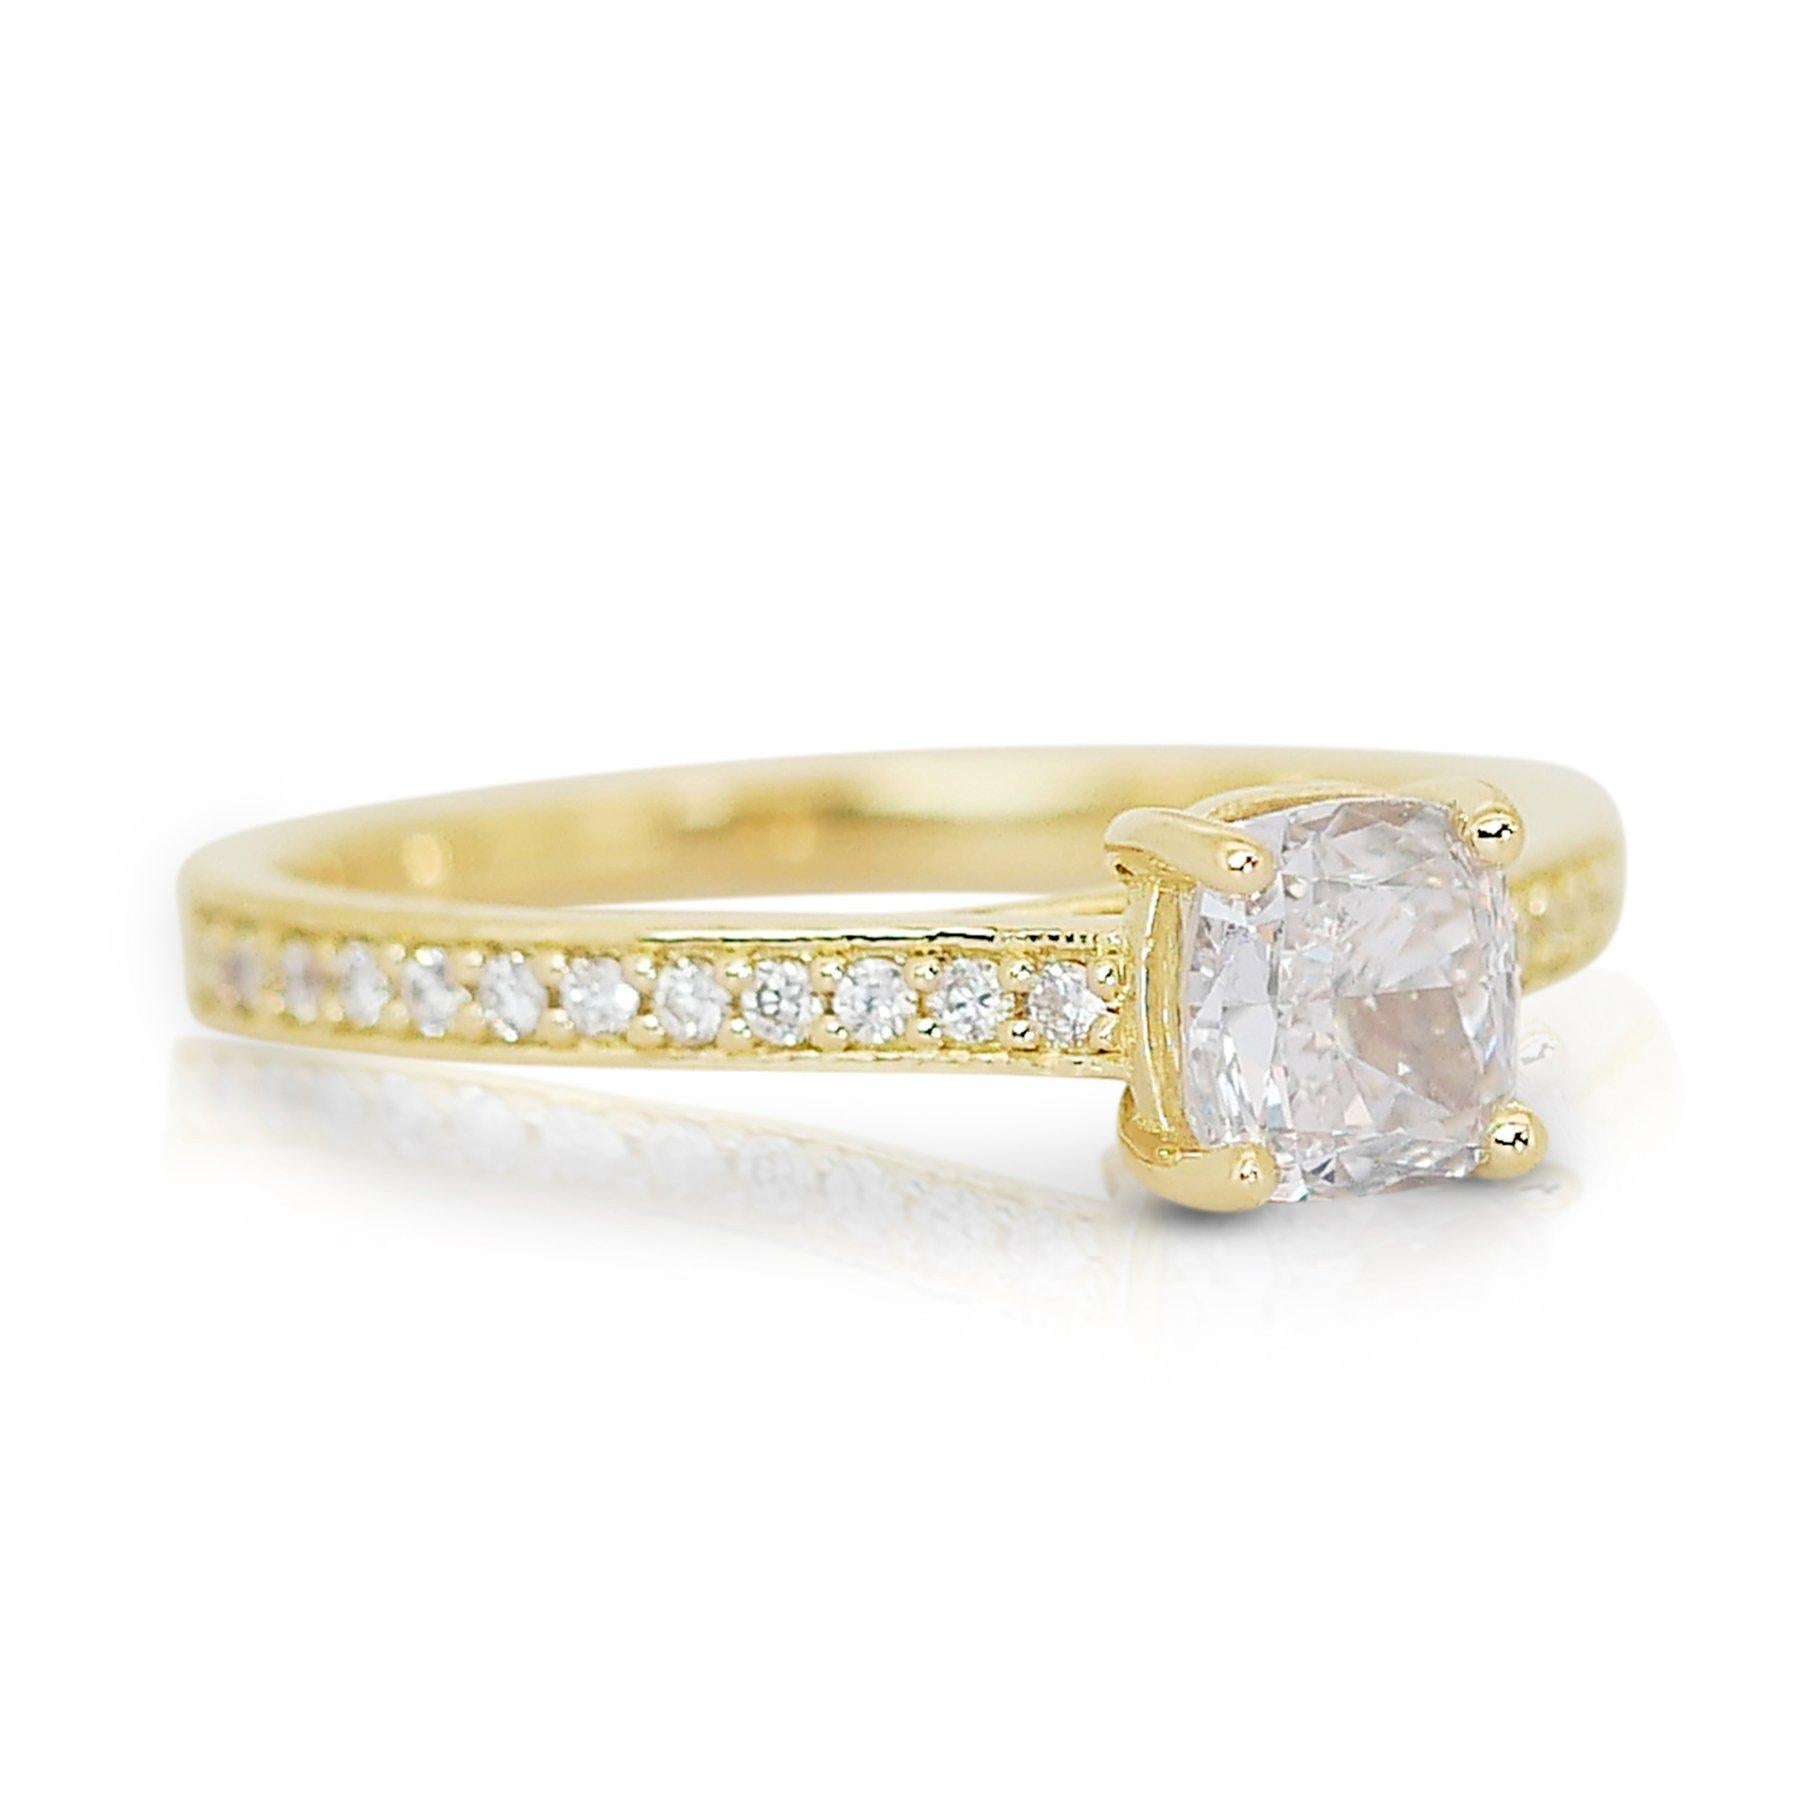 Luminous 1,17ct Diamant Pave Ring in 18k Gelbgold - GIA zertifiziert

Dieser elegante Ring aus 18-karätigem Gelbgold ist mit einem 1,00-Karat-Diamanten im Kissenschliff versehen und mit Präzision gefertigt. Der Mittelstein wird von einem funkelnden